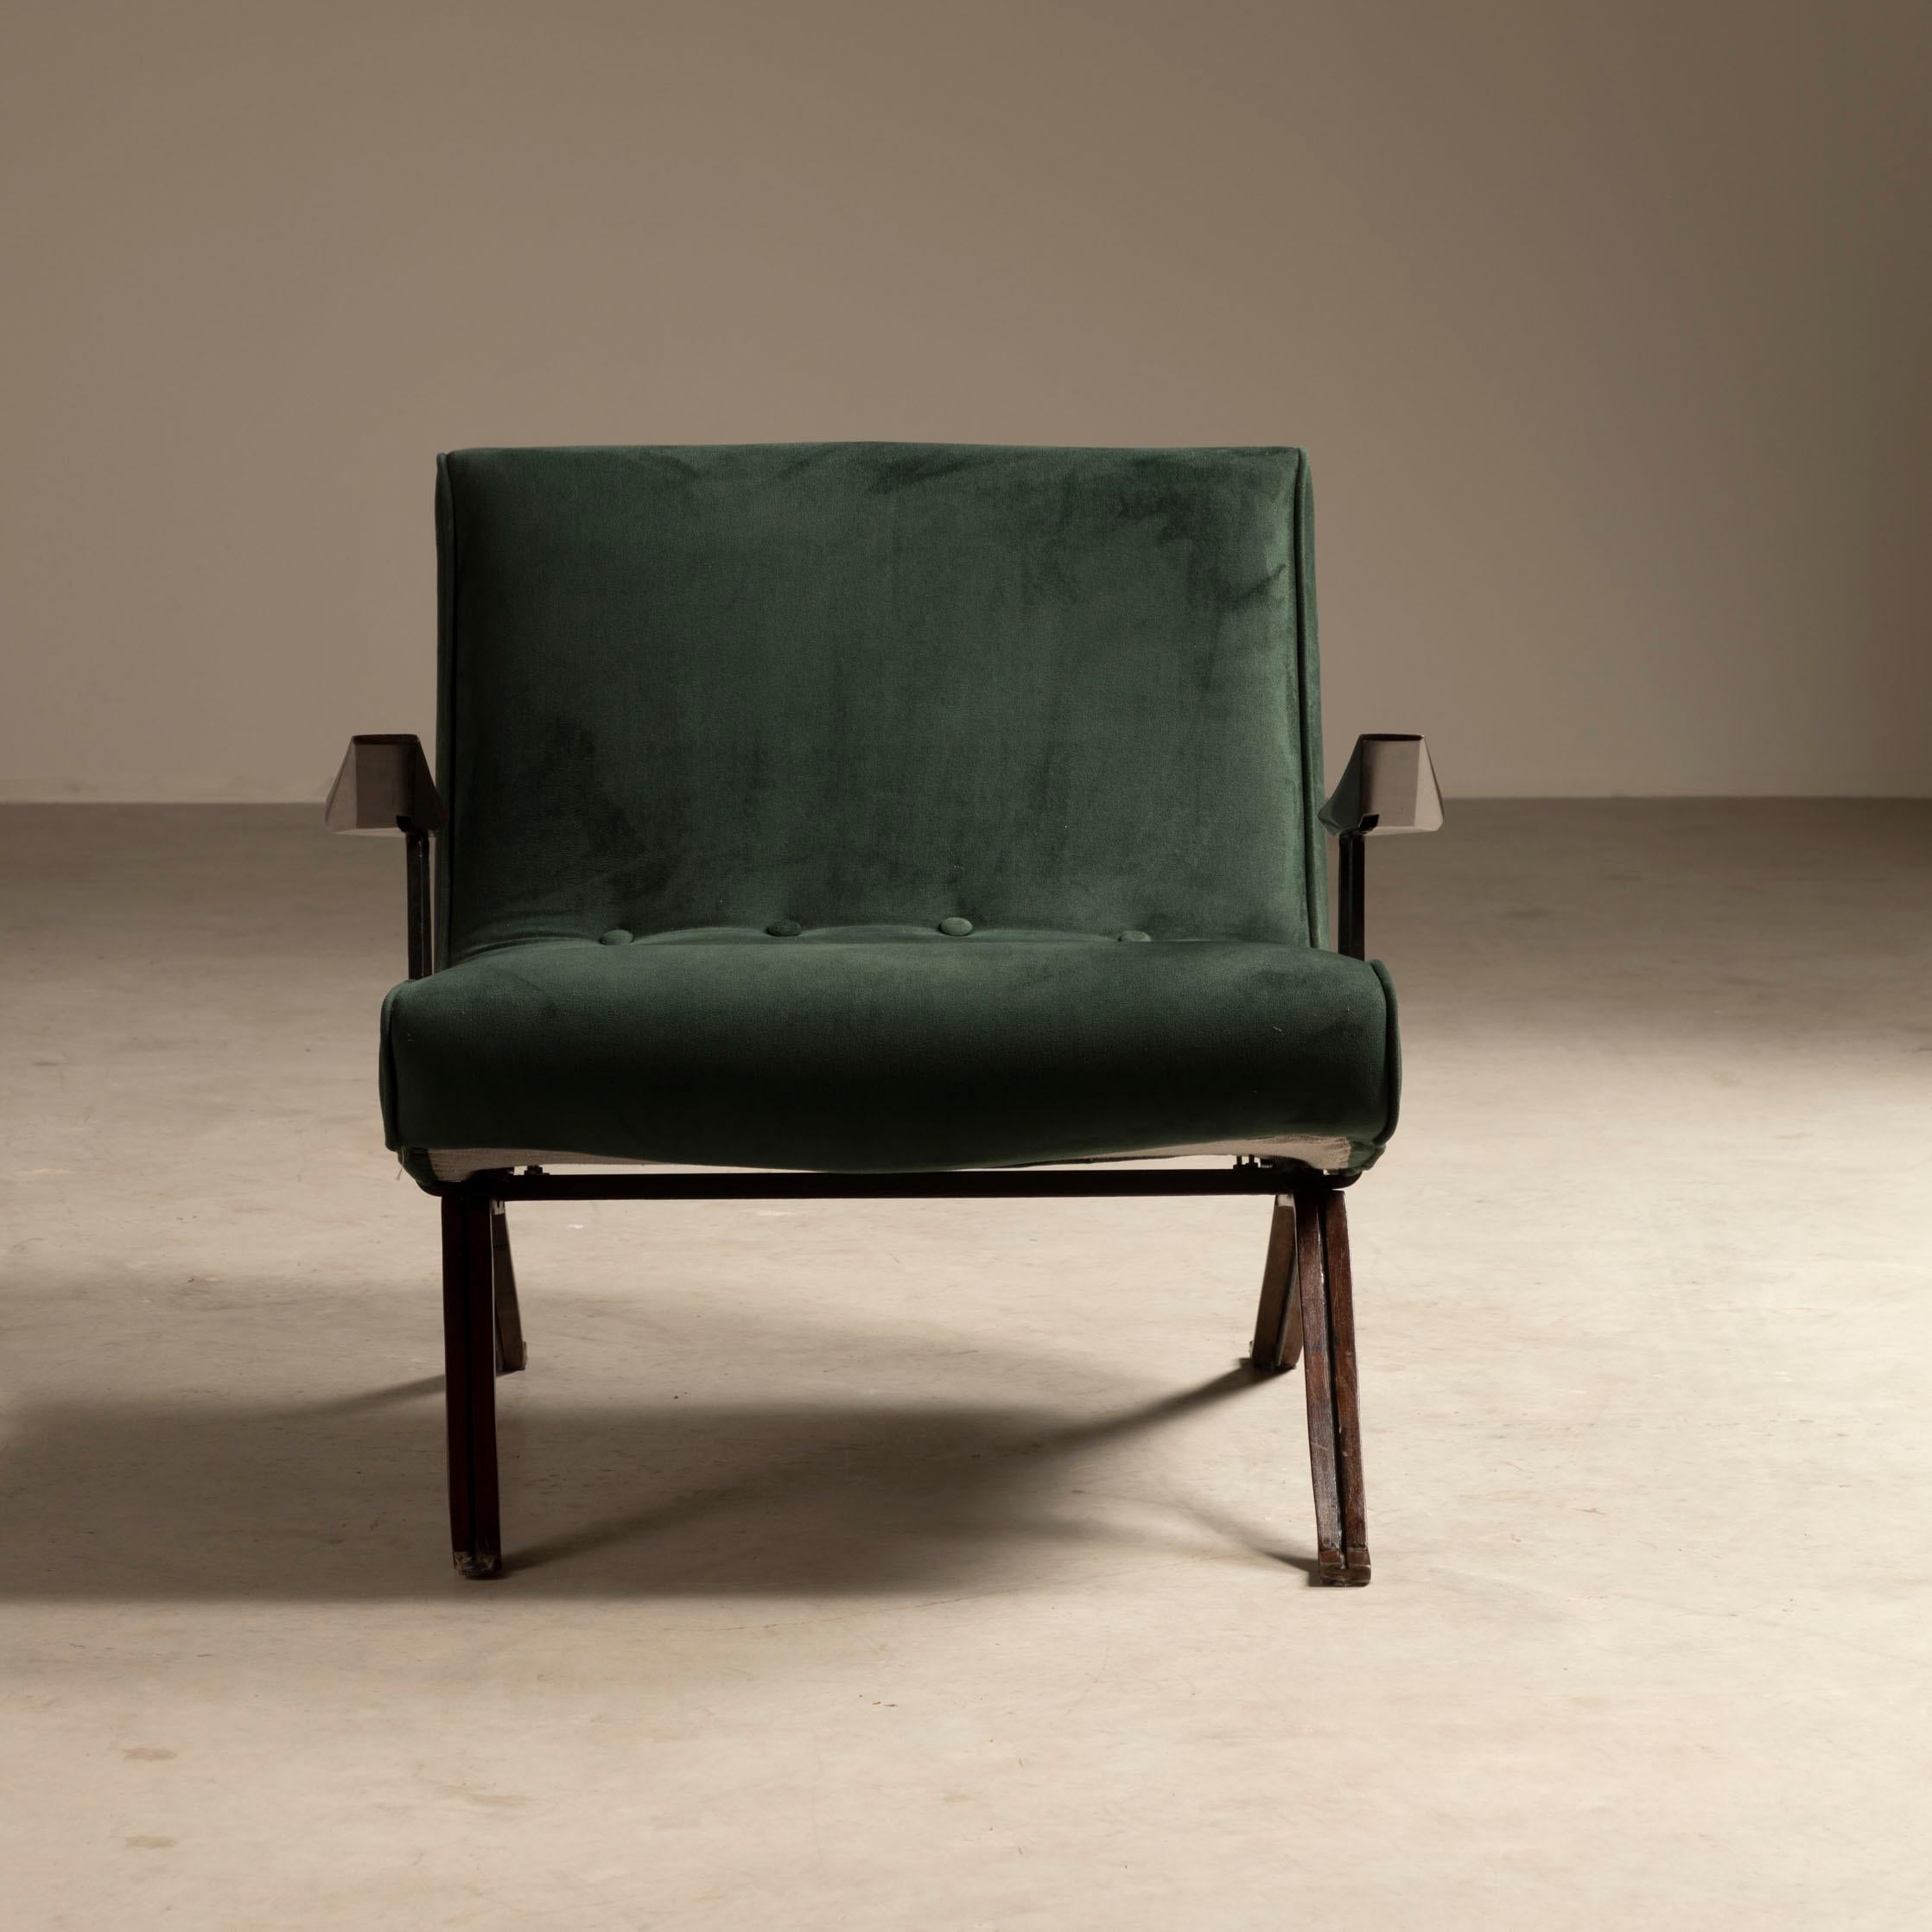 Cette magnifique paire de fauteuils MP-01, en fer recouvert de bois dur brésilien, conçue et produite en 1961 par le maître Percival Lafer, est la première pièce créée par le designer. Il a un design remarquable et confortable. La structure